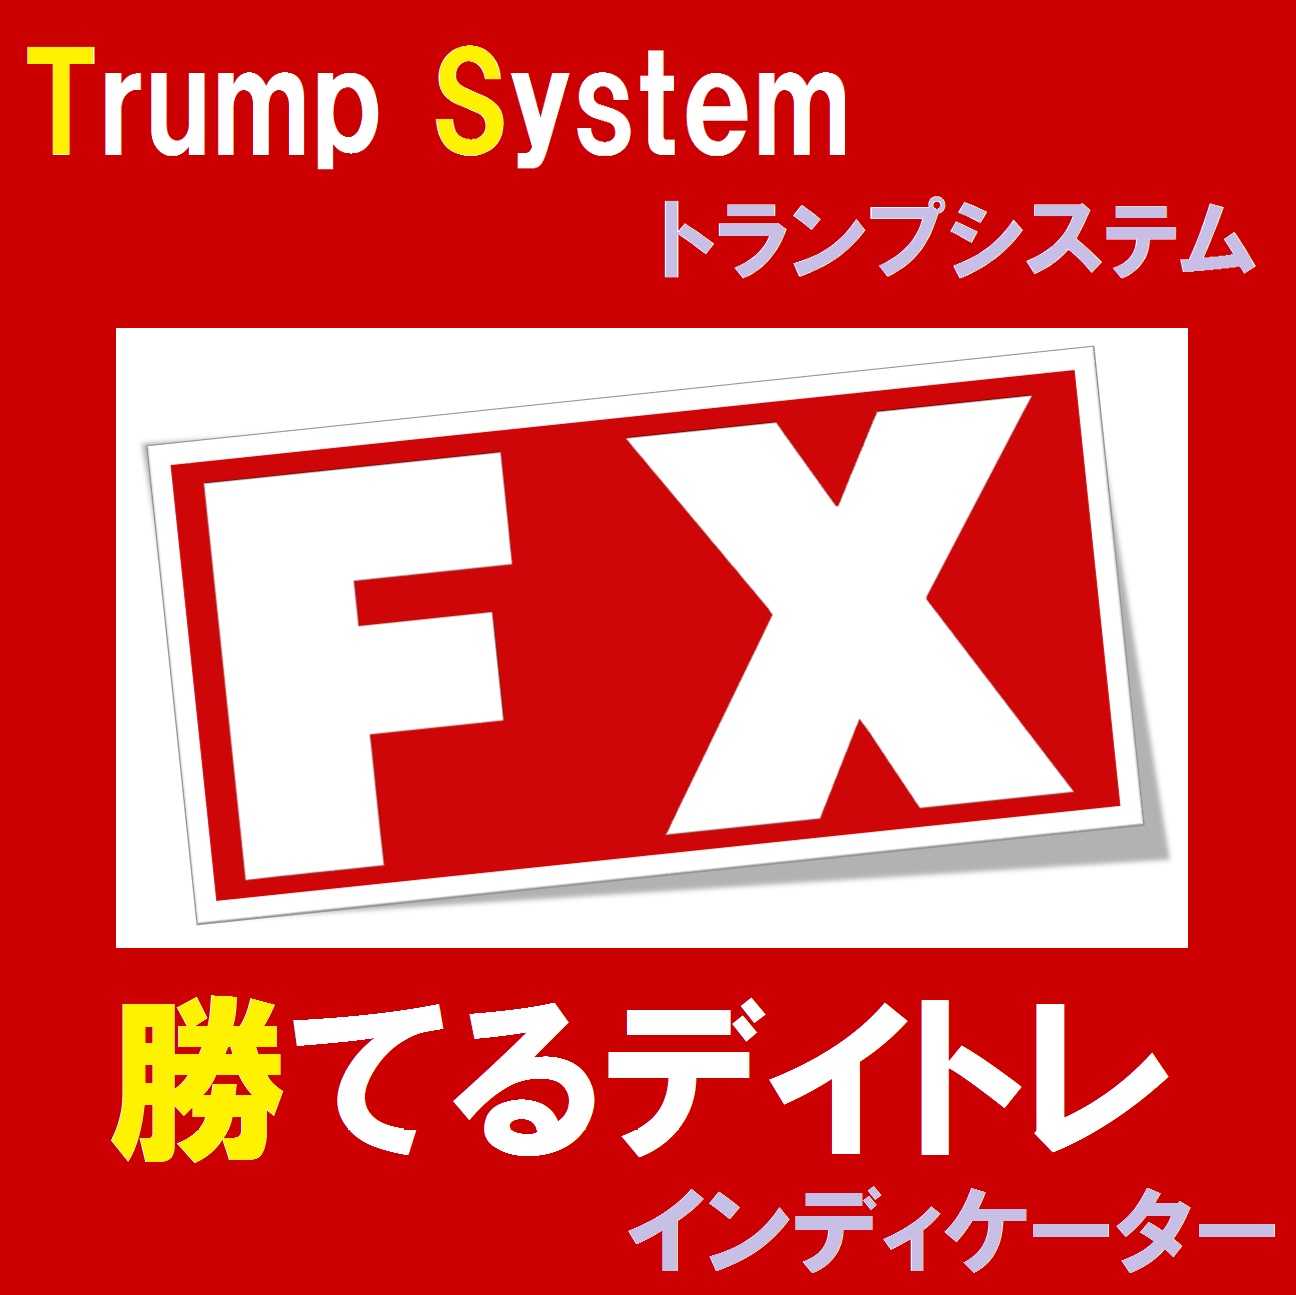 Trump System インジケーター・電子書籍